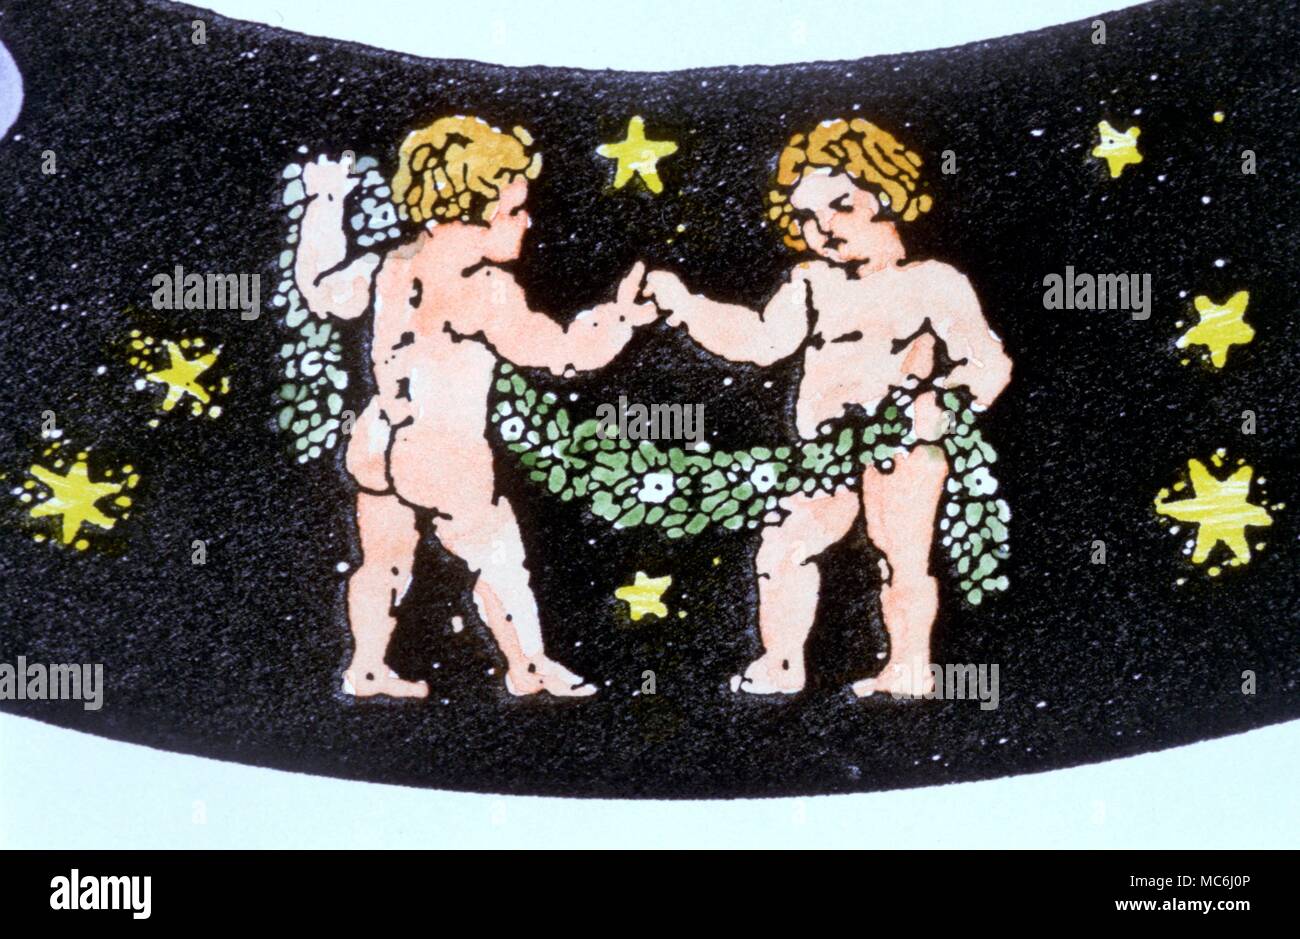 Segni zodiacali Gemini Gemini i gemelli dalle immagini zodiacale progettato la Libra Astrologia del suo Technics ed etica 1911 Foto Stock